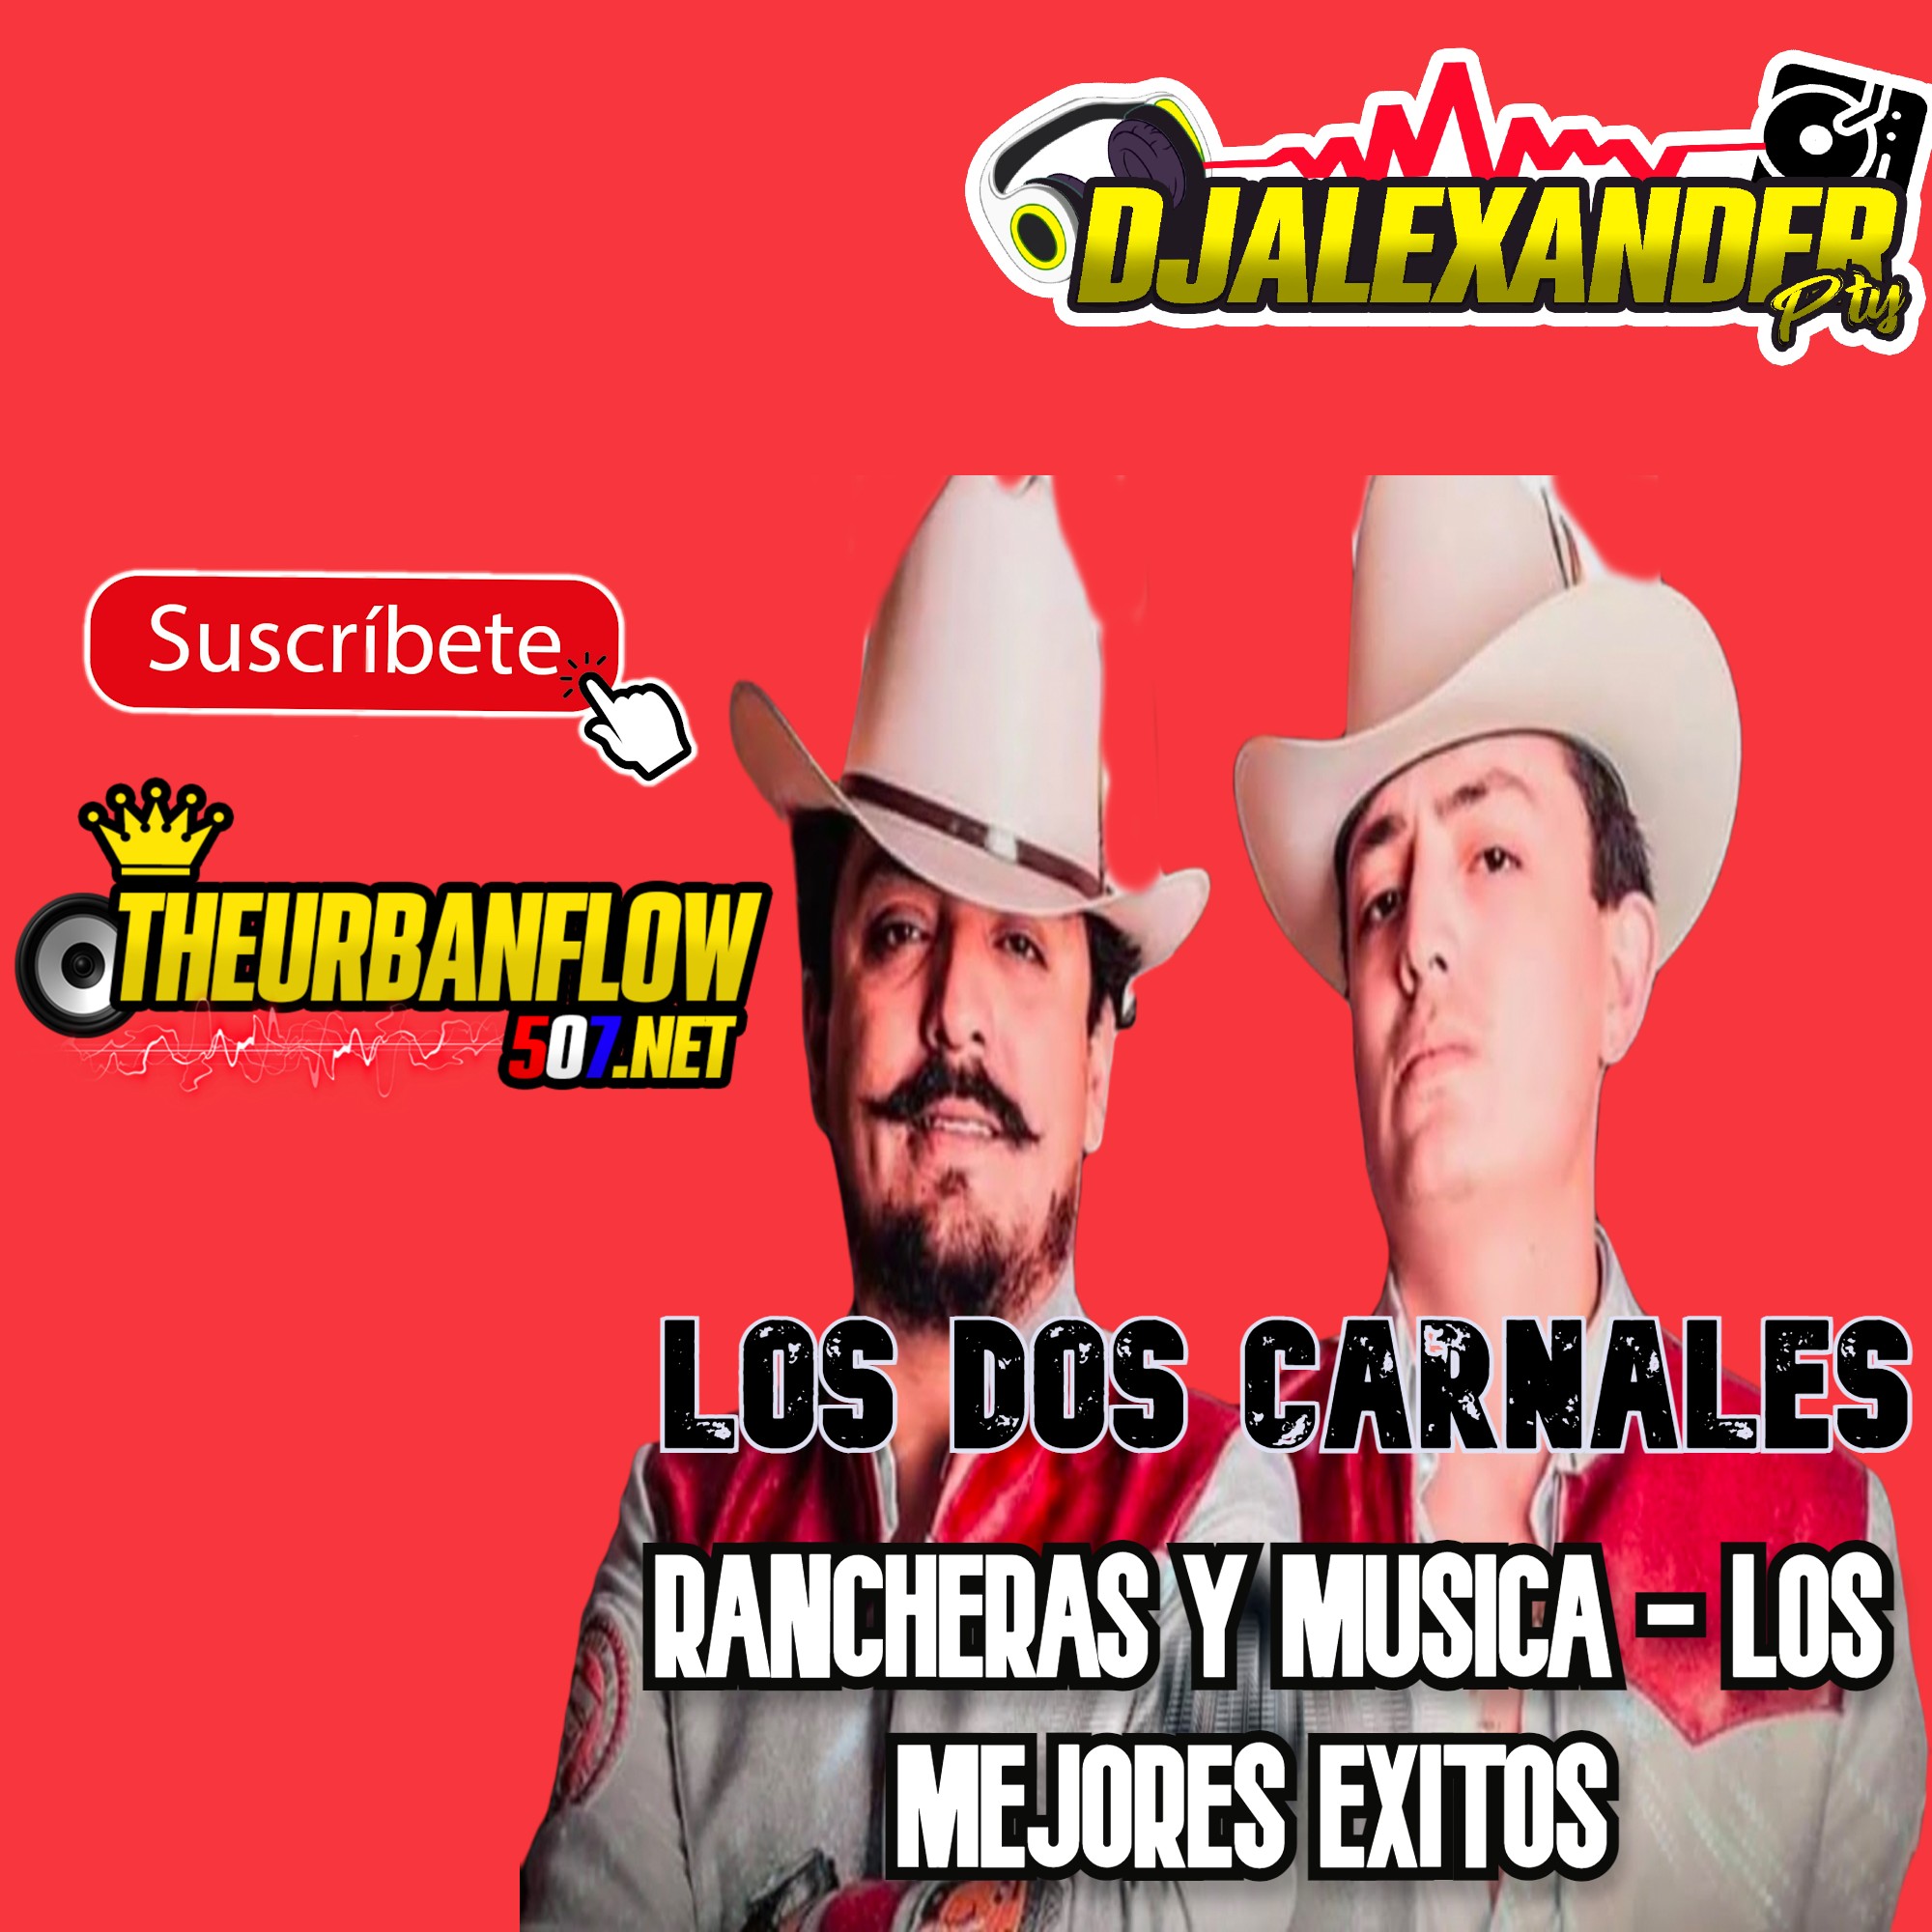 Los Dos Carnales RANCHERAS Y MUSICA - LOS MEJORES EXITOS - @DJALEXANDERPTY